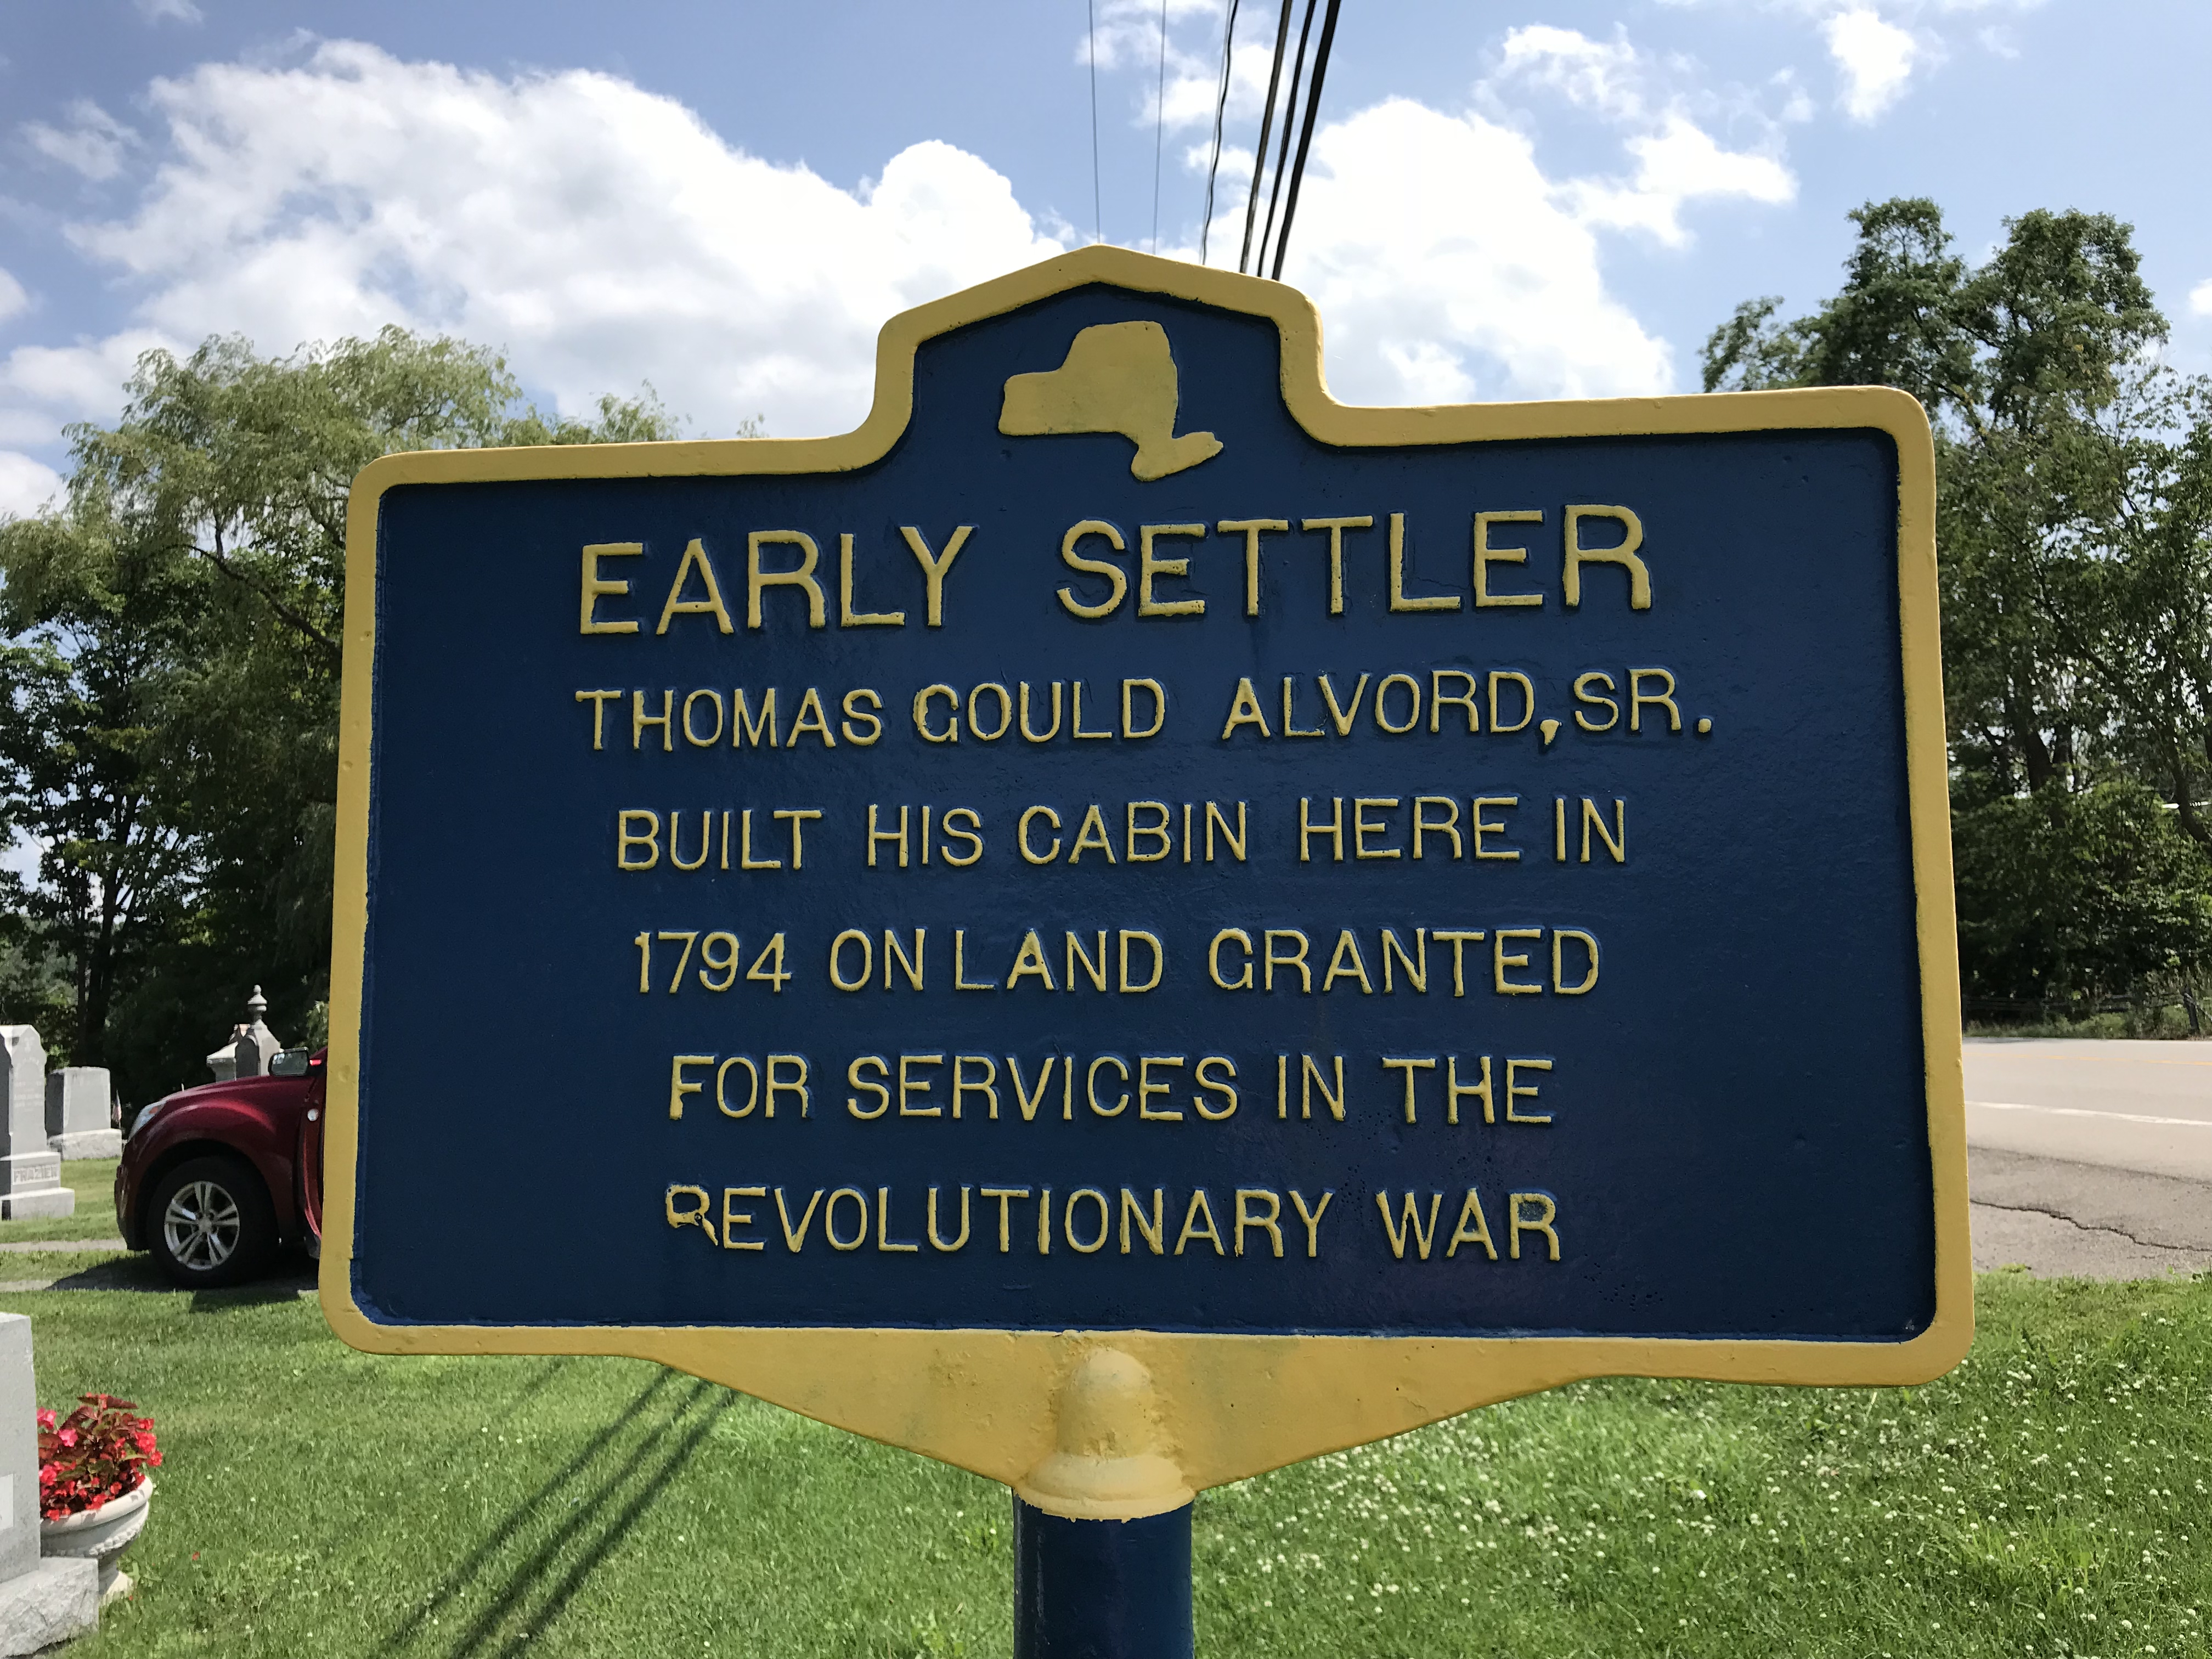 Early Settler, Thomas Gould Alvord, Sr. (Homer, NY)